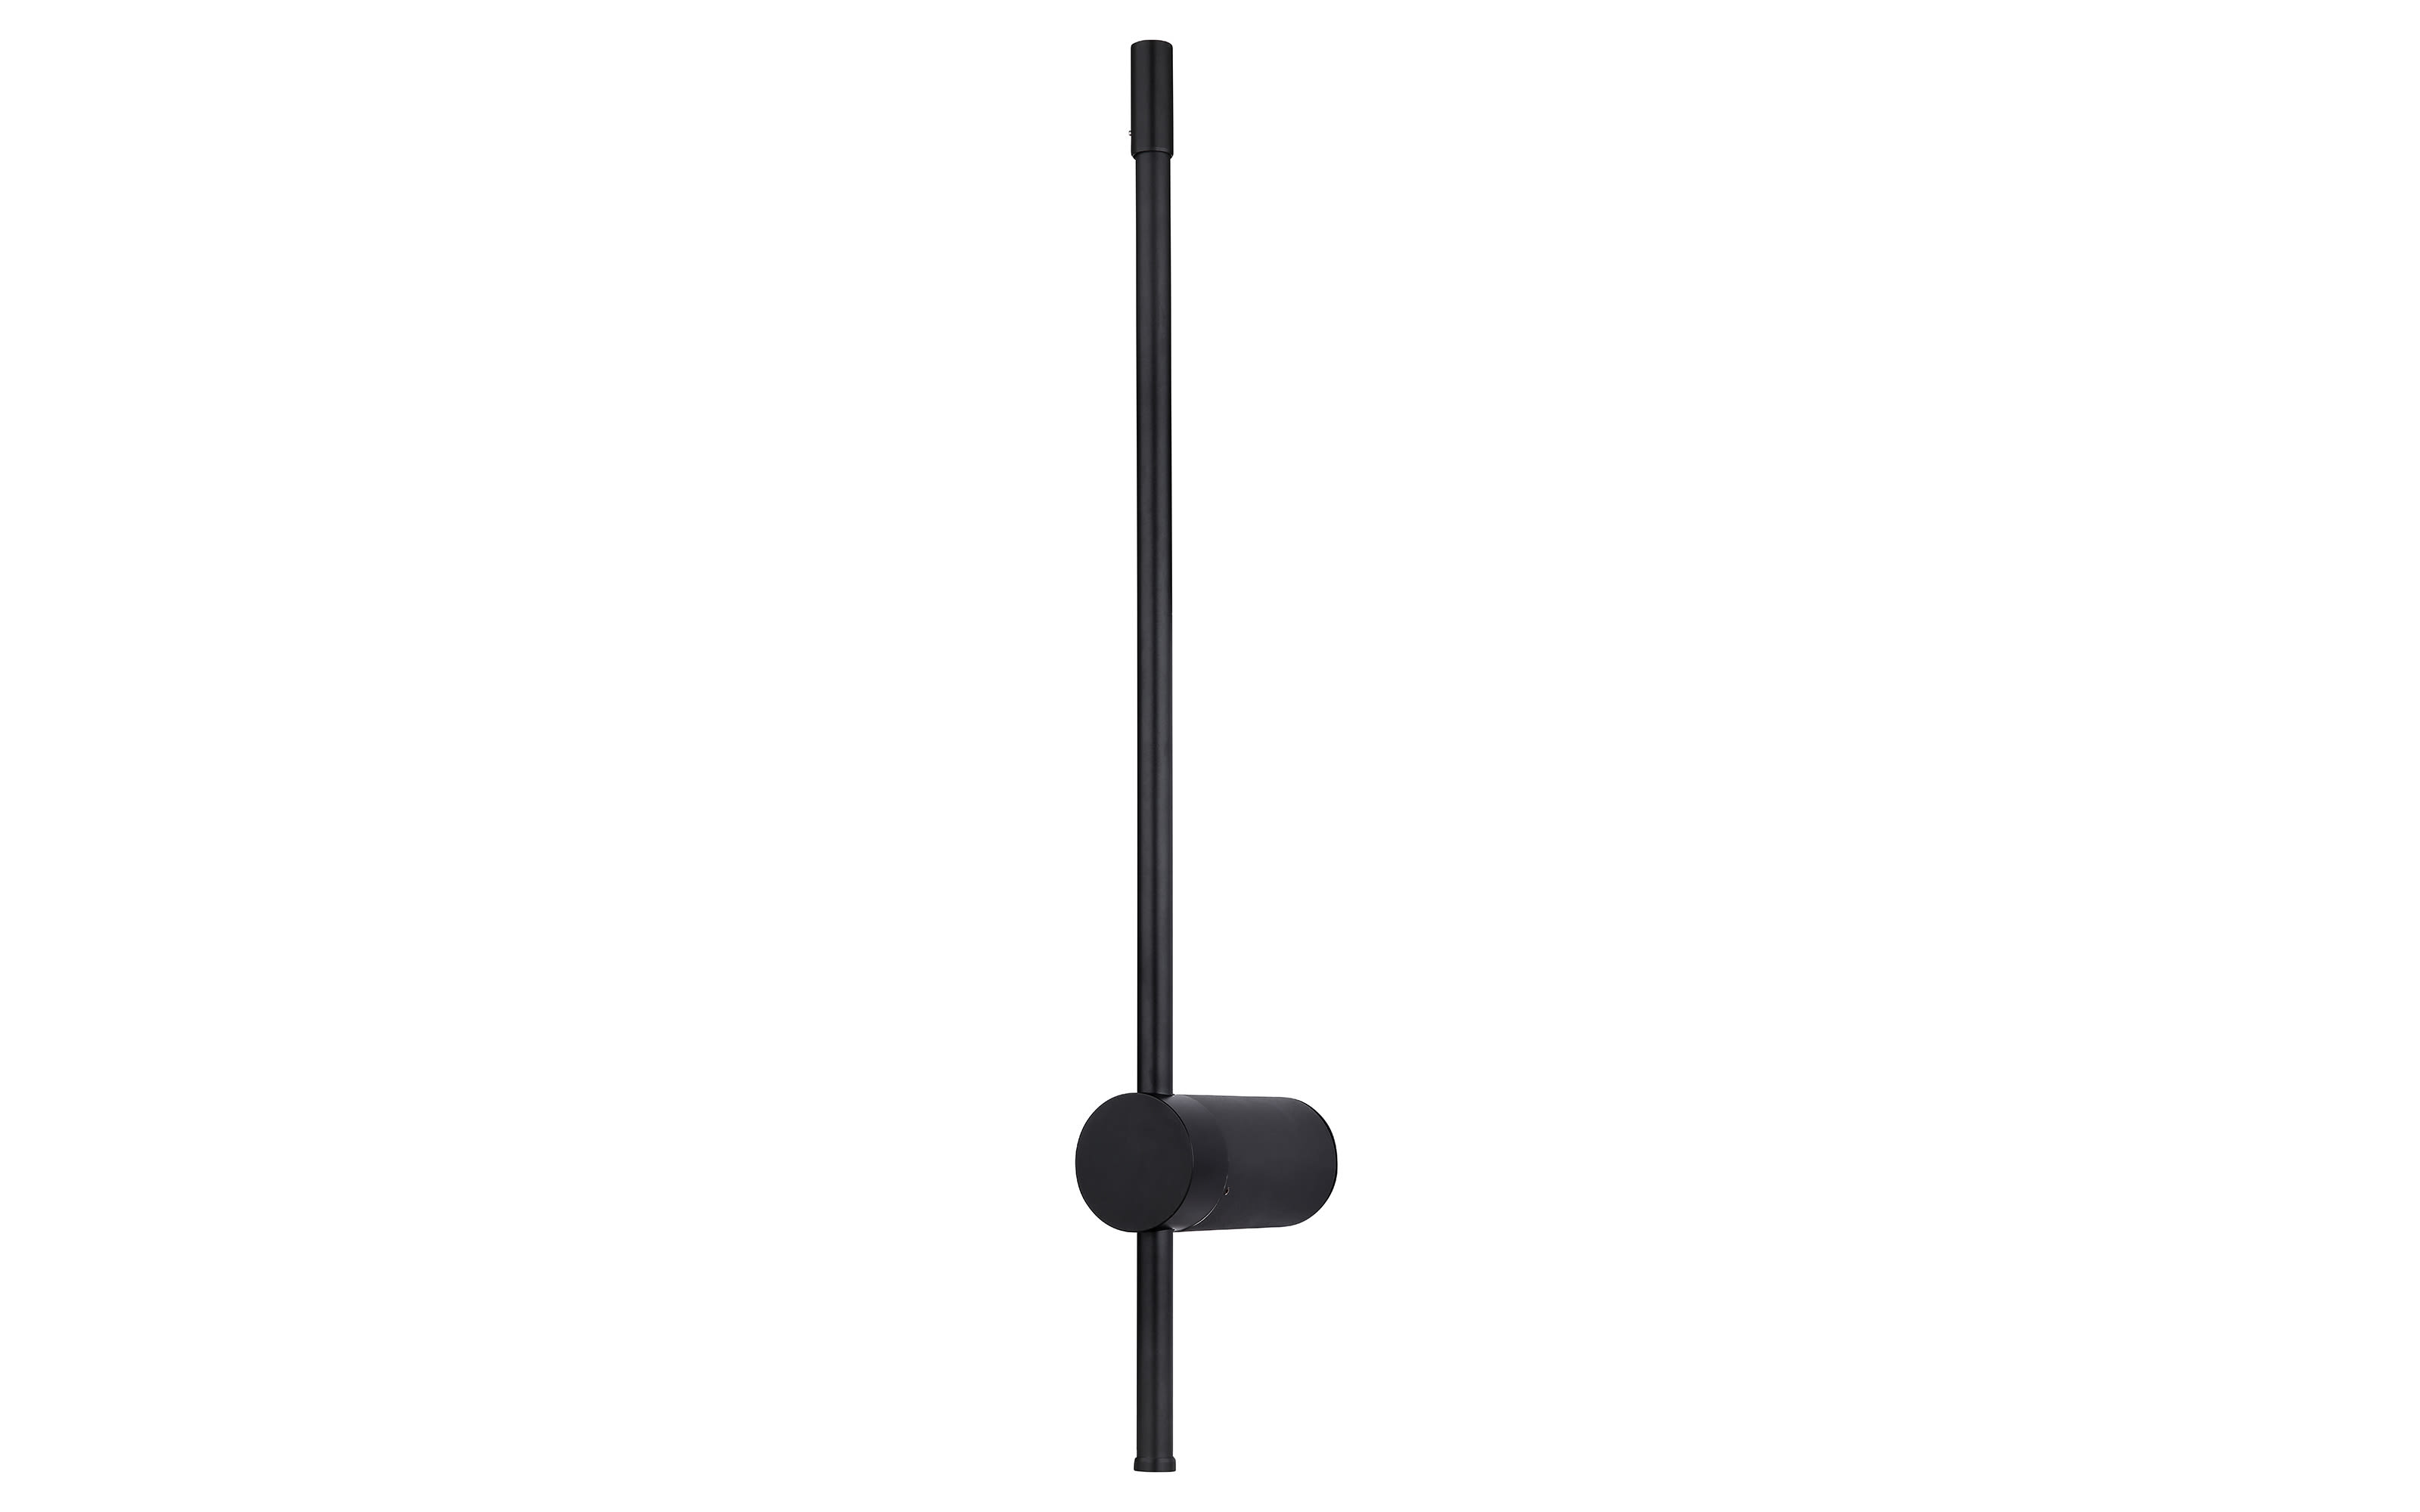 LED-Wandleuchte Chasey in schwarz matt, 63 cm